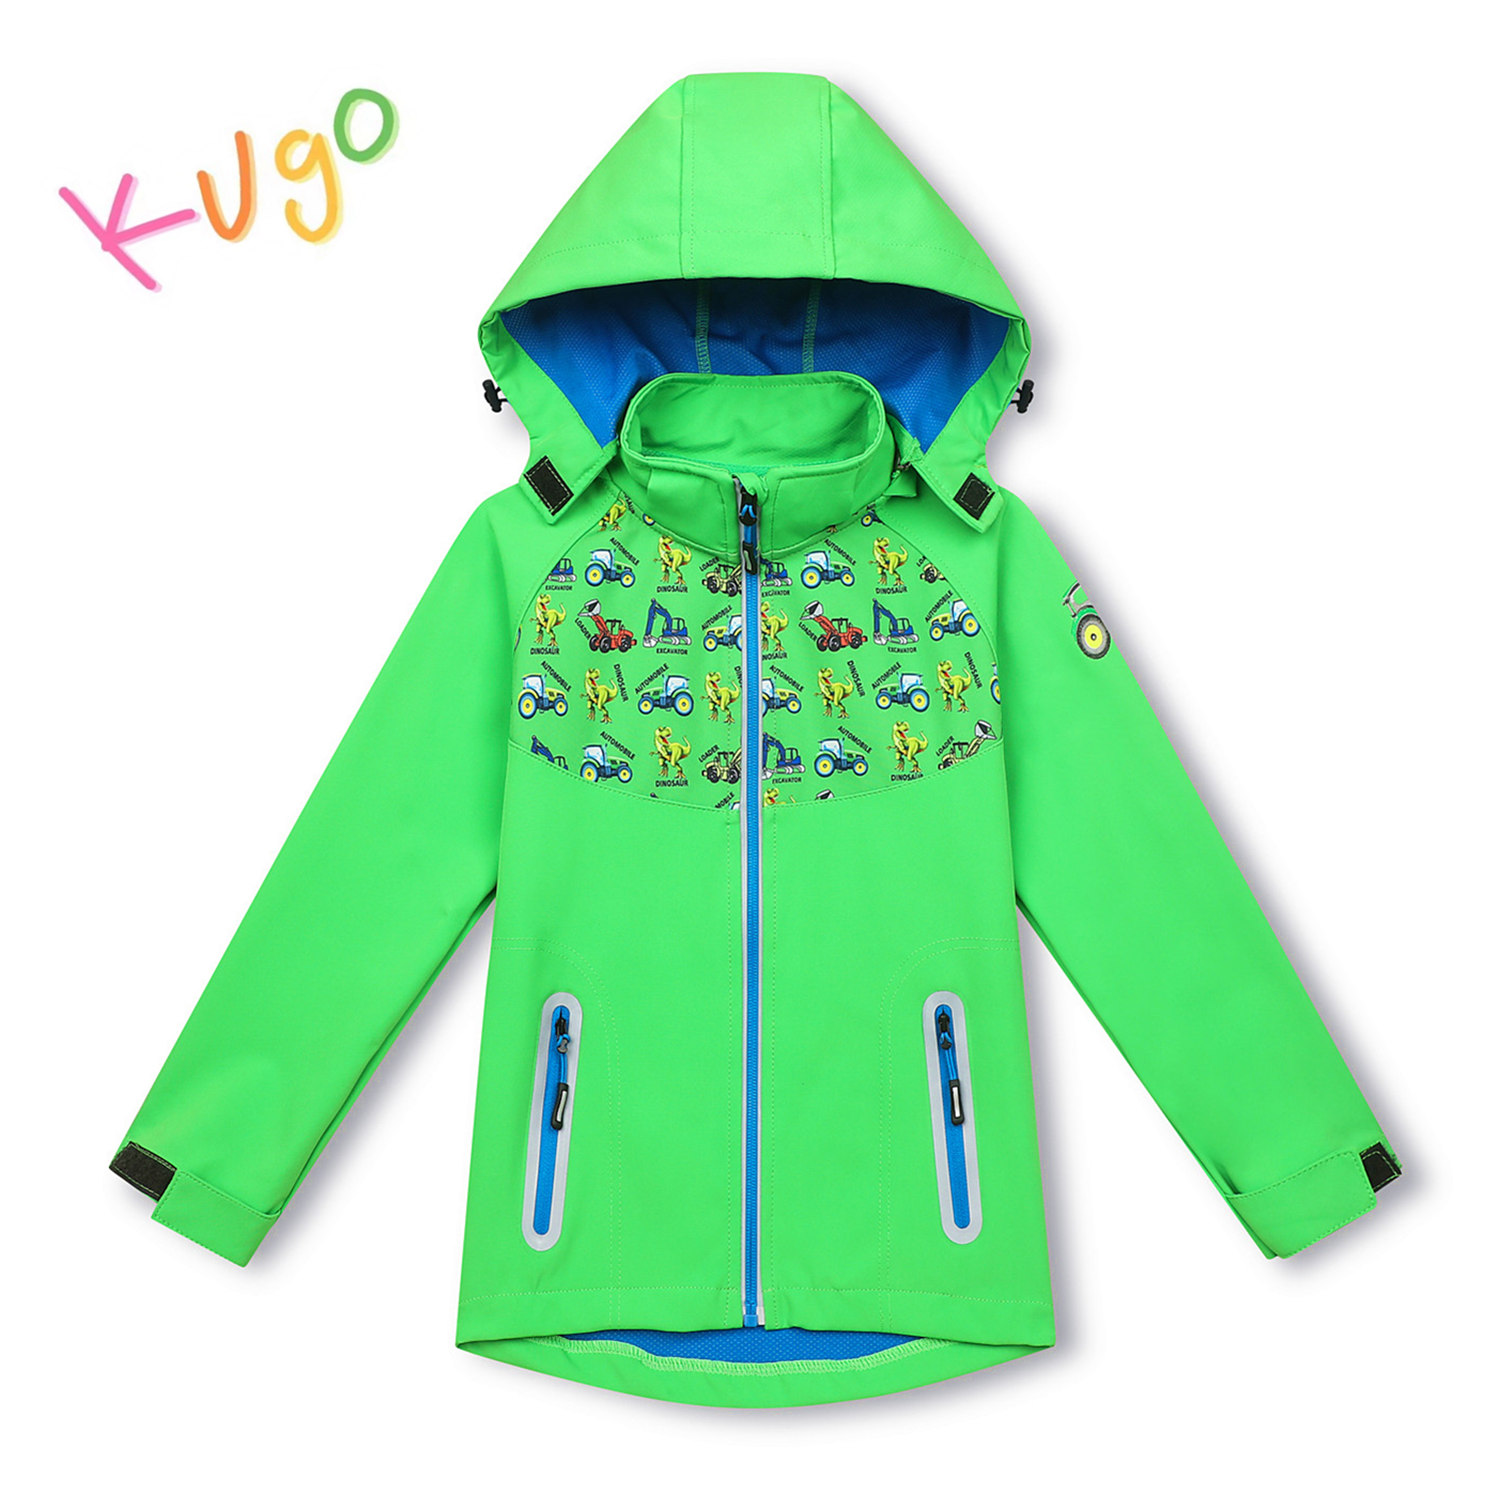 Chlapecká softshellová bunda - KUGO HK3121, zelená Barva: Zelená, Velikost: 110